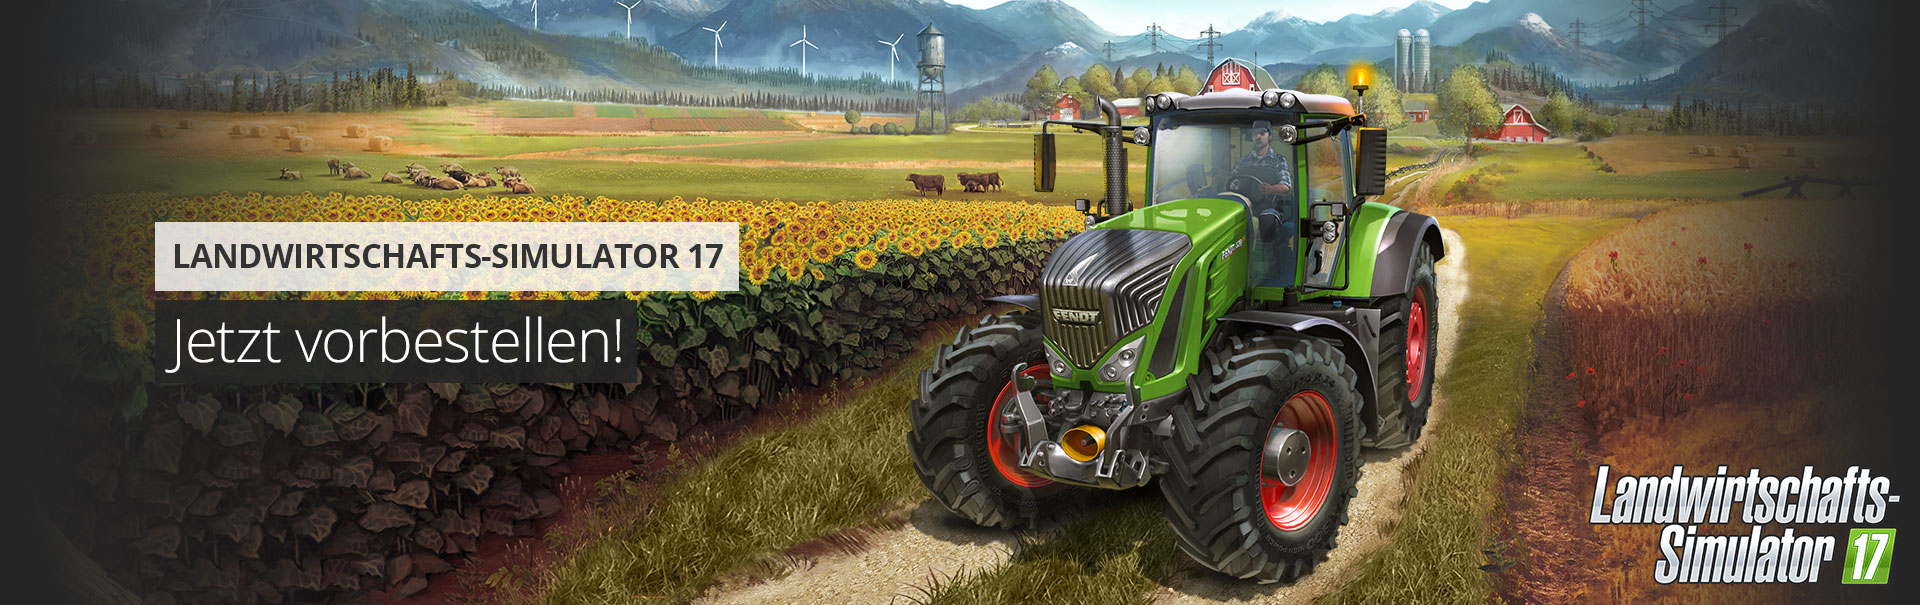 Landwirtschafts-Simulator 17 bald erhältlich